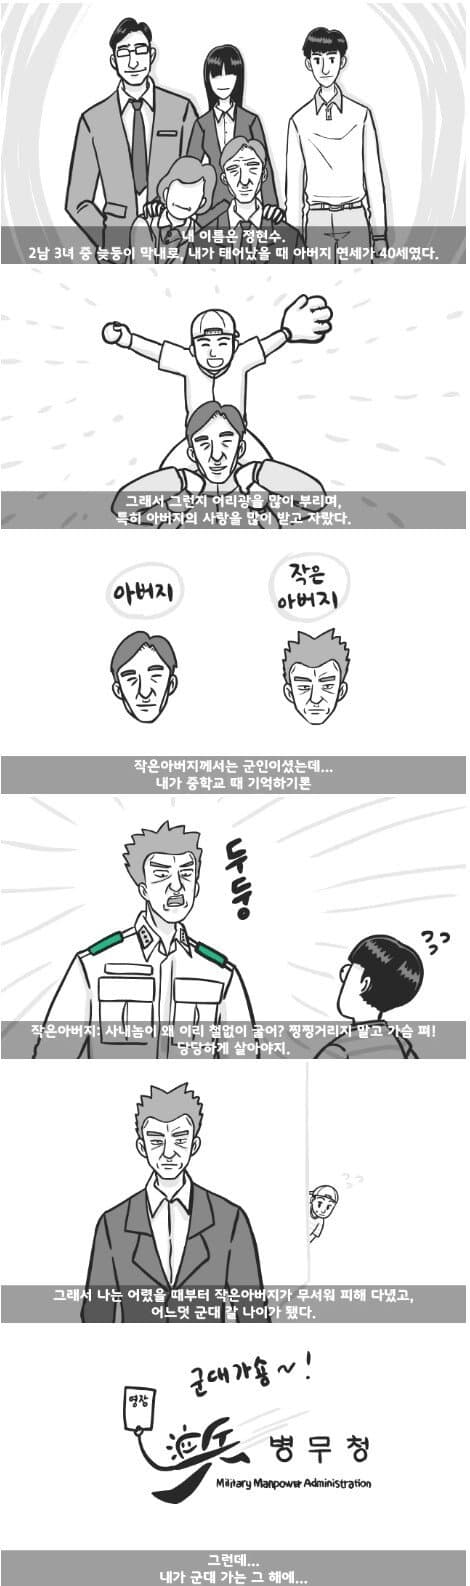 군대 4스타인 만화 1.jpg